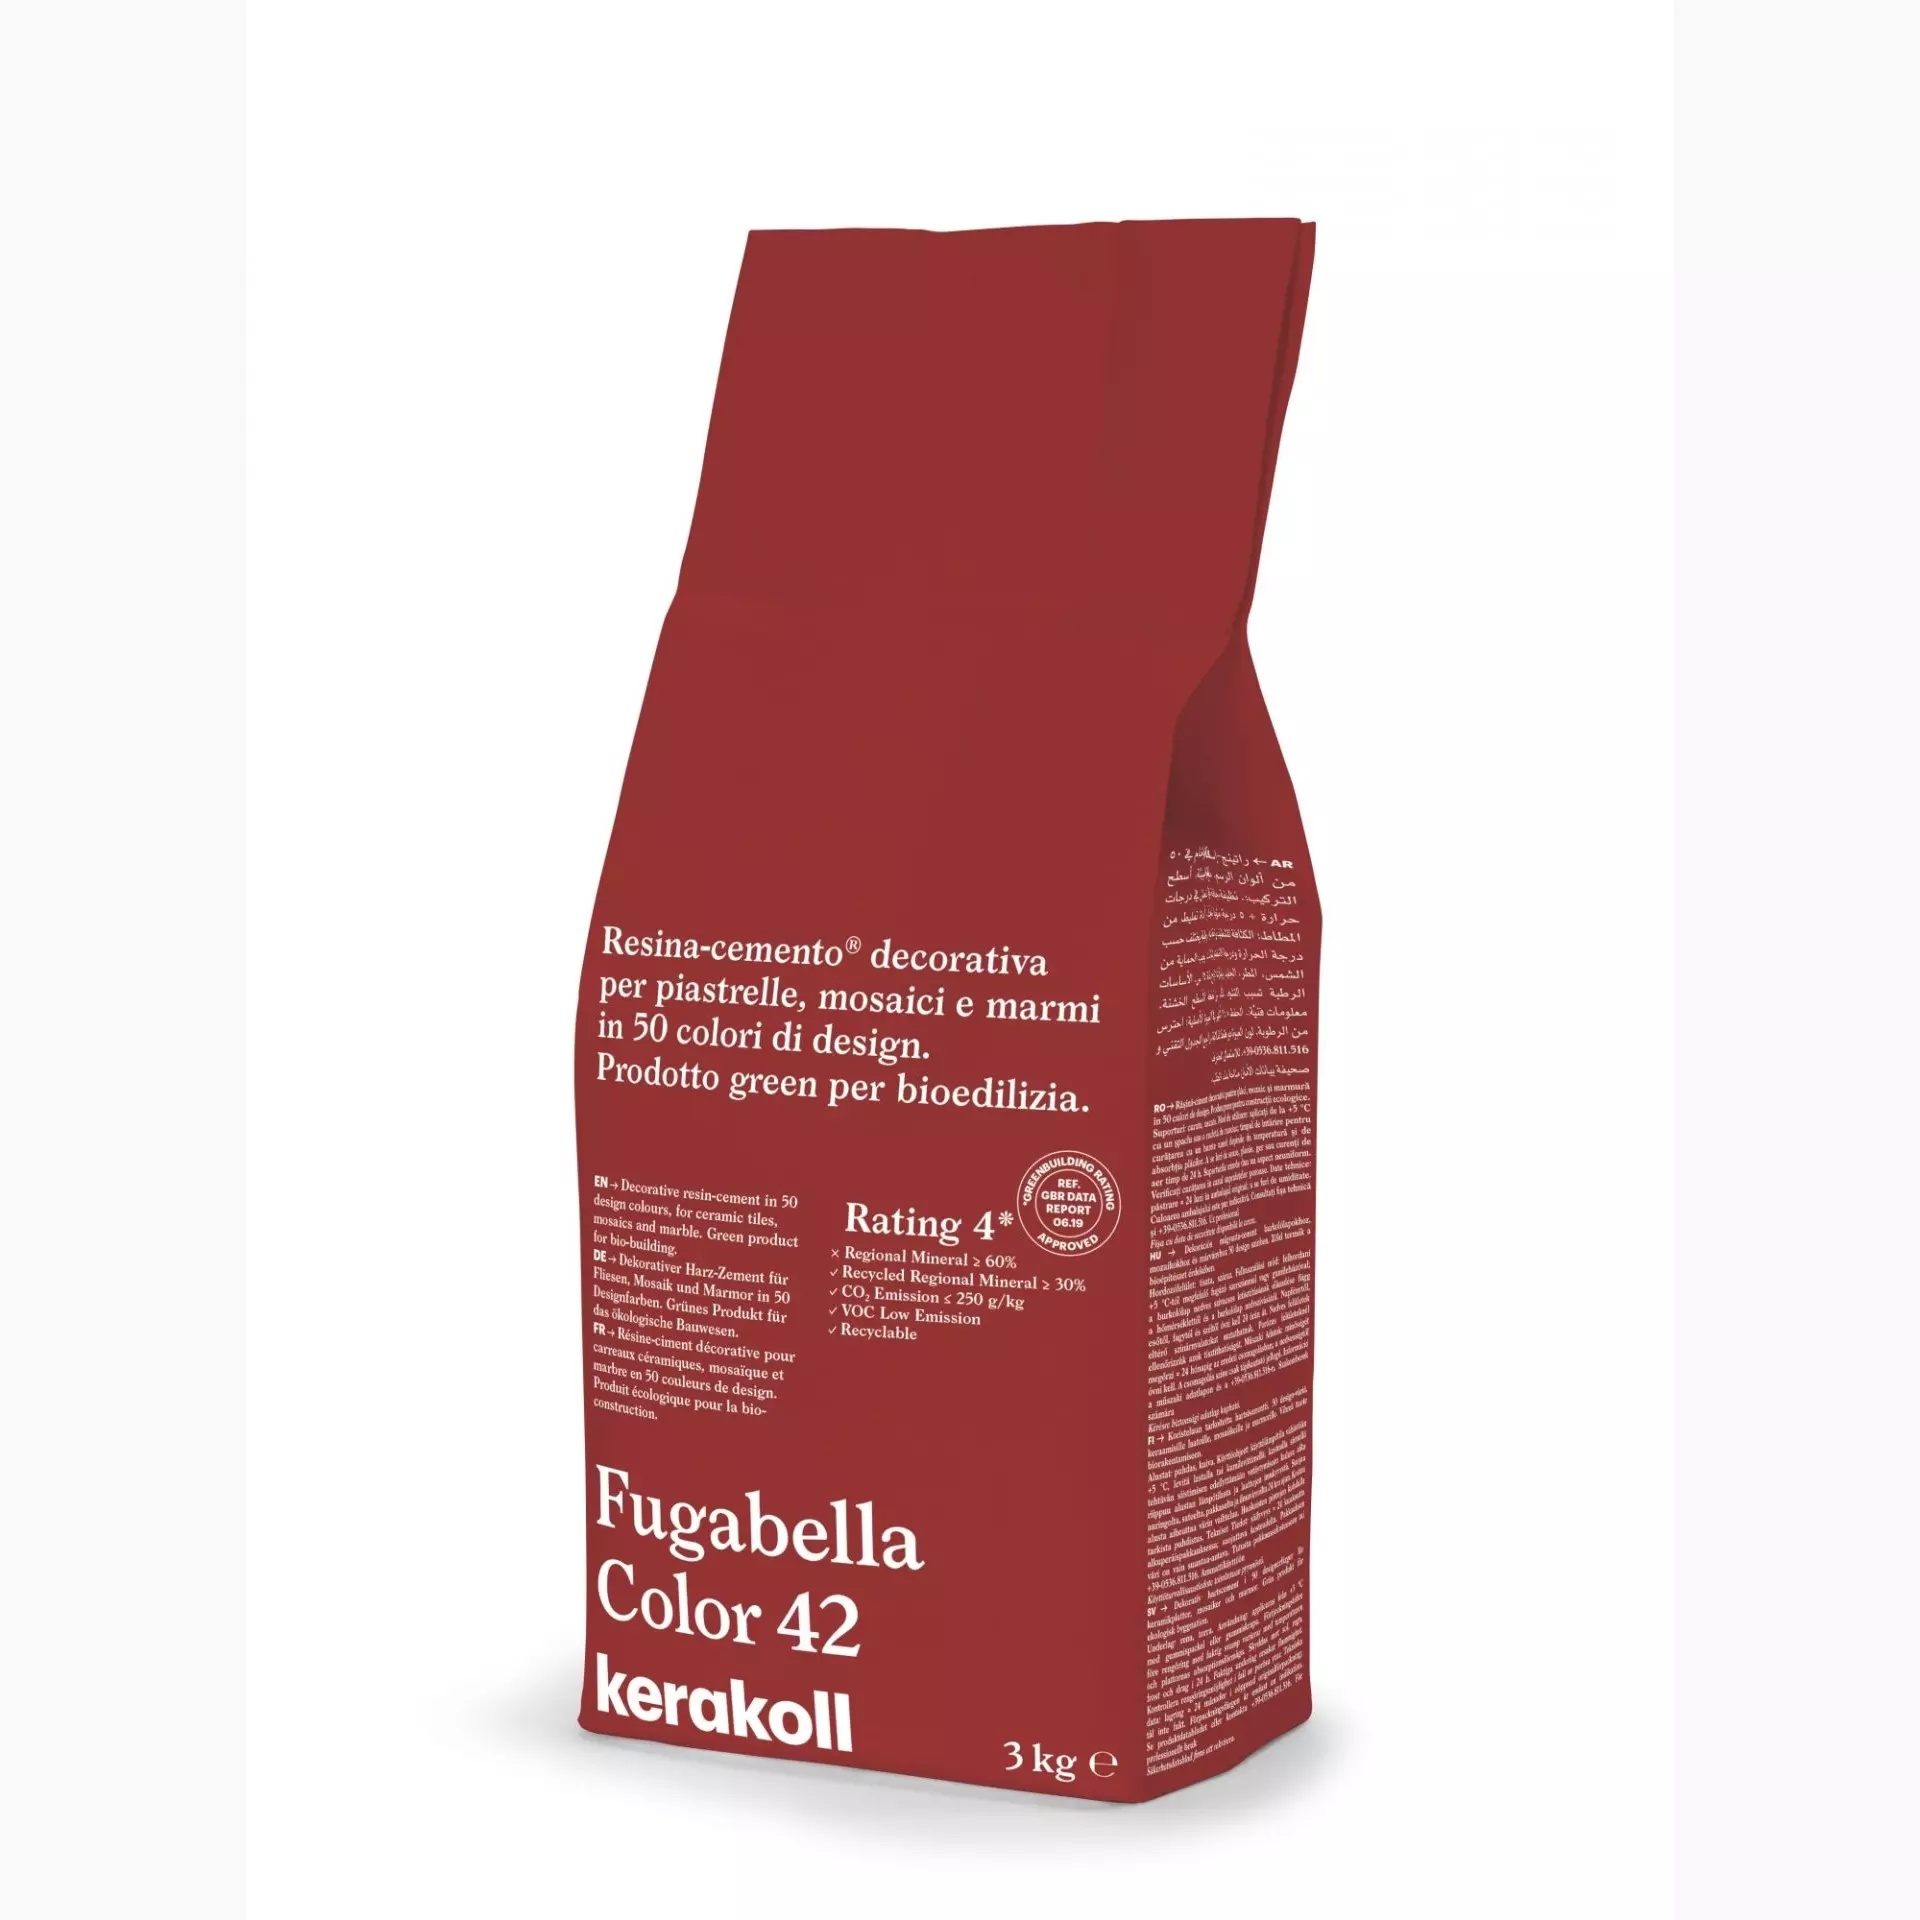 Kerakoll Fugabella Color - 42 - 3kg